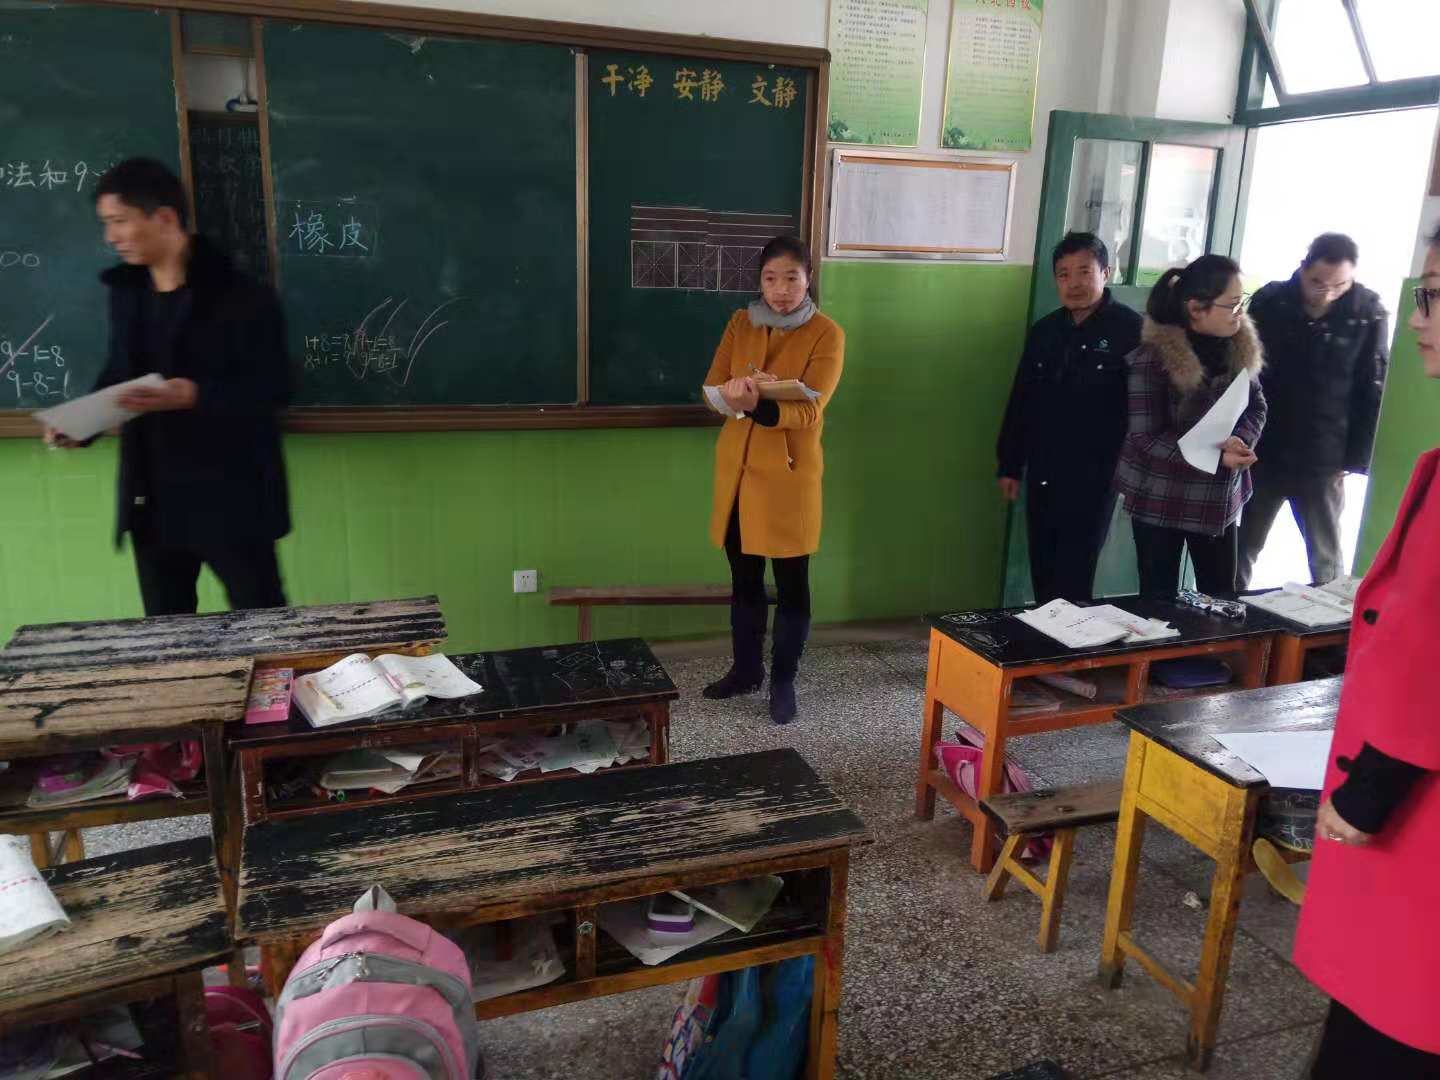 马陵山镇钟吾小学举行班级卫生评比活动